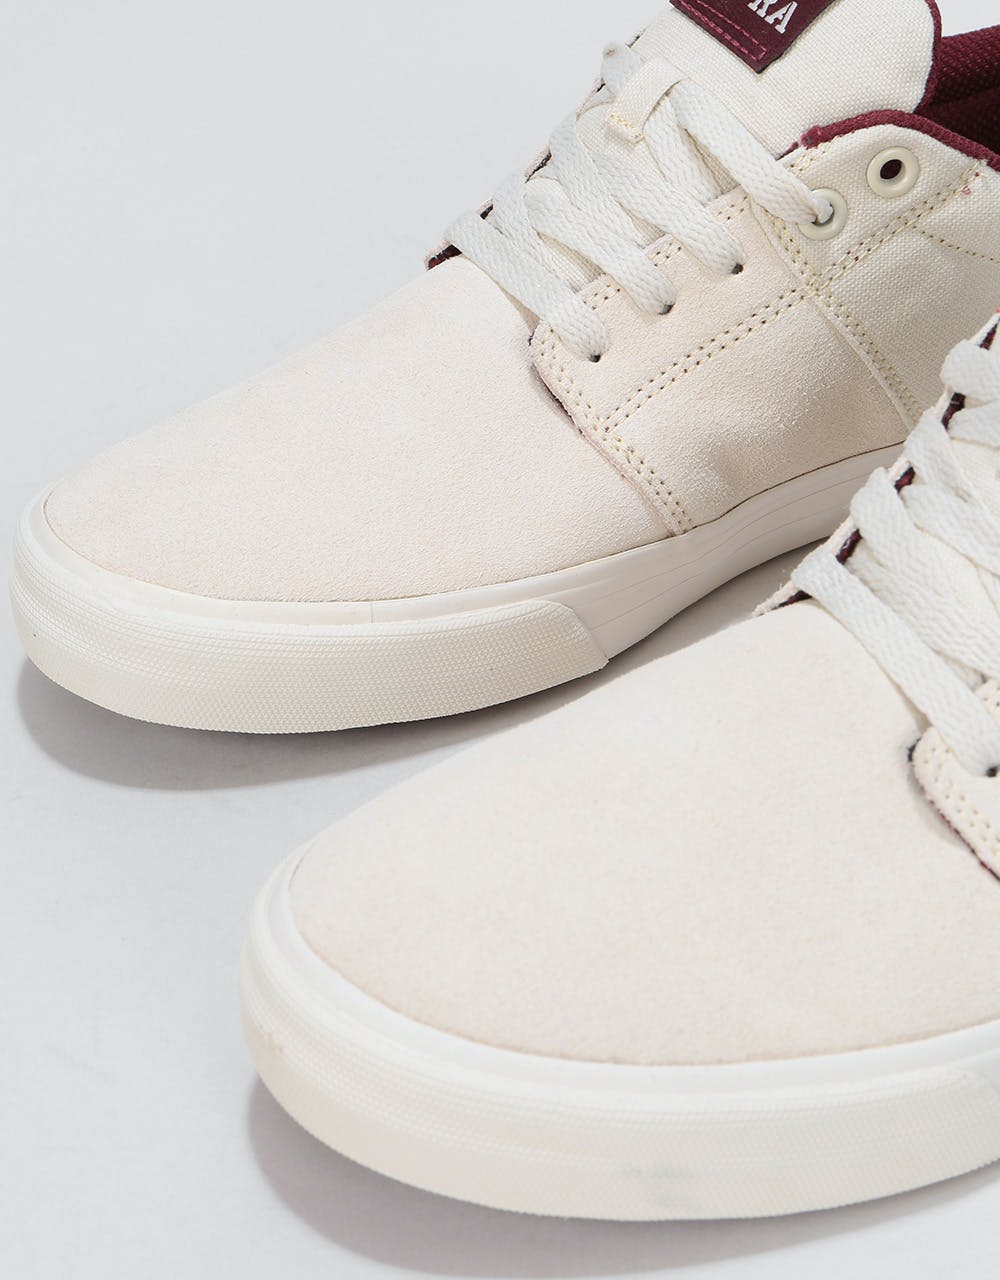 Supra Stacks Vulc II Skate Shoes - Off White/Off White